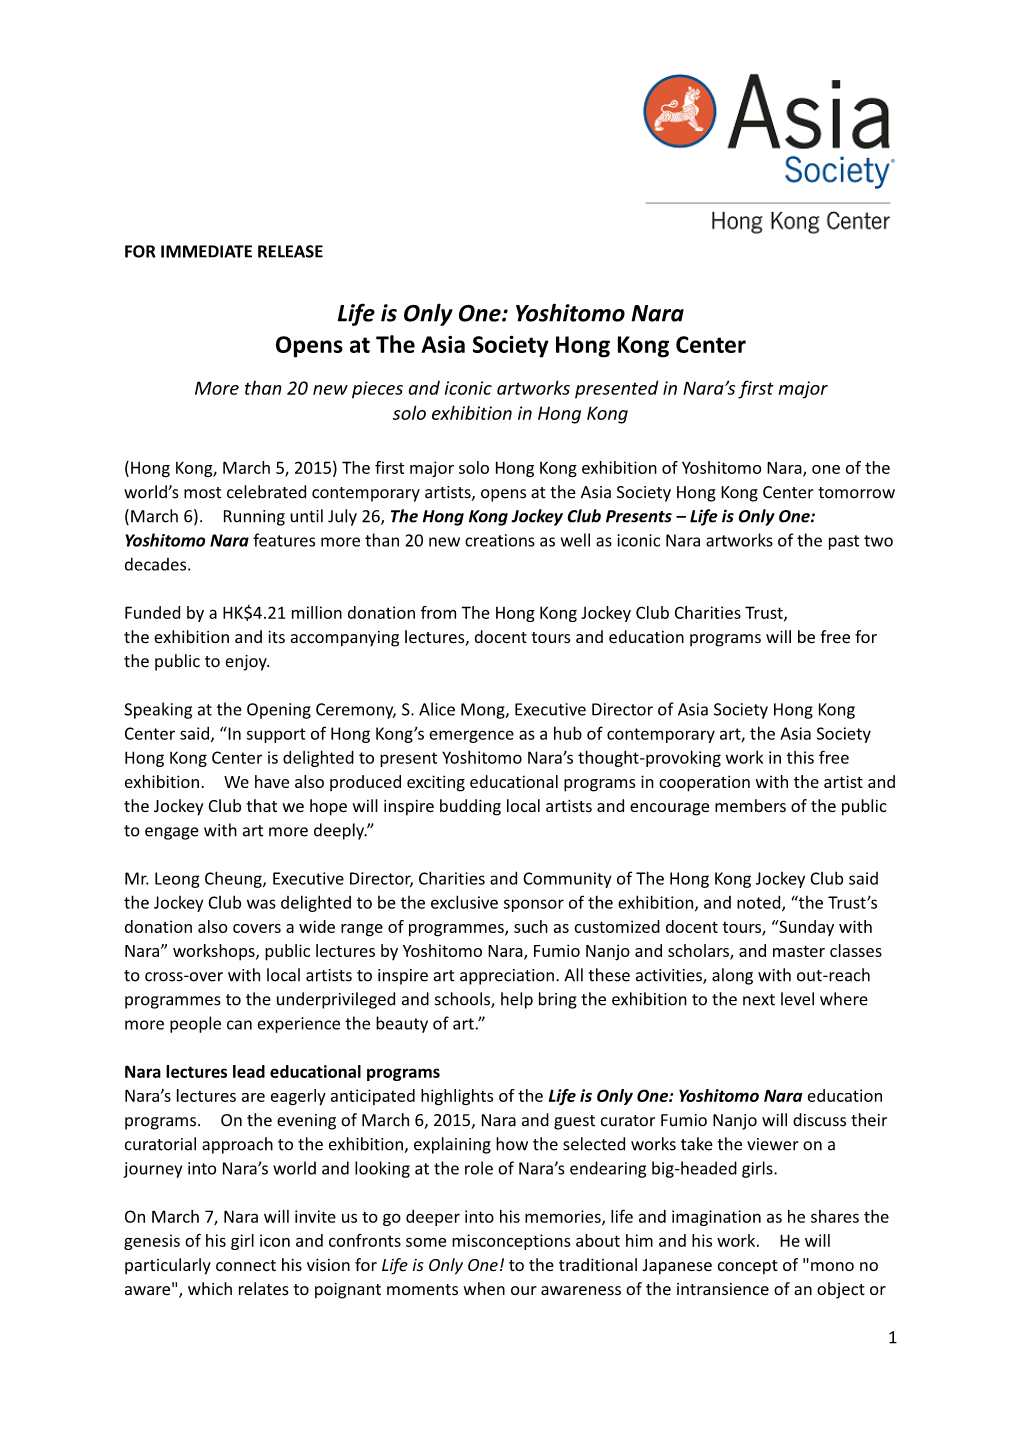 Life Is Only One: Yoshitomo Nara Opens at the Asia Society Hong